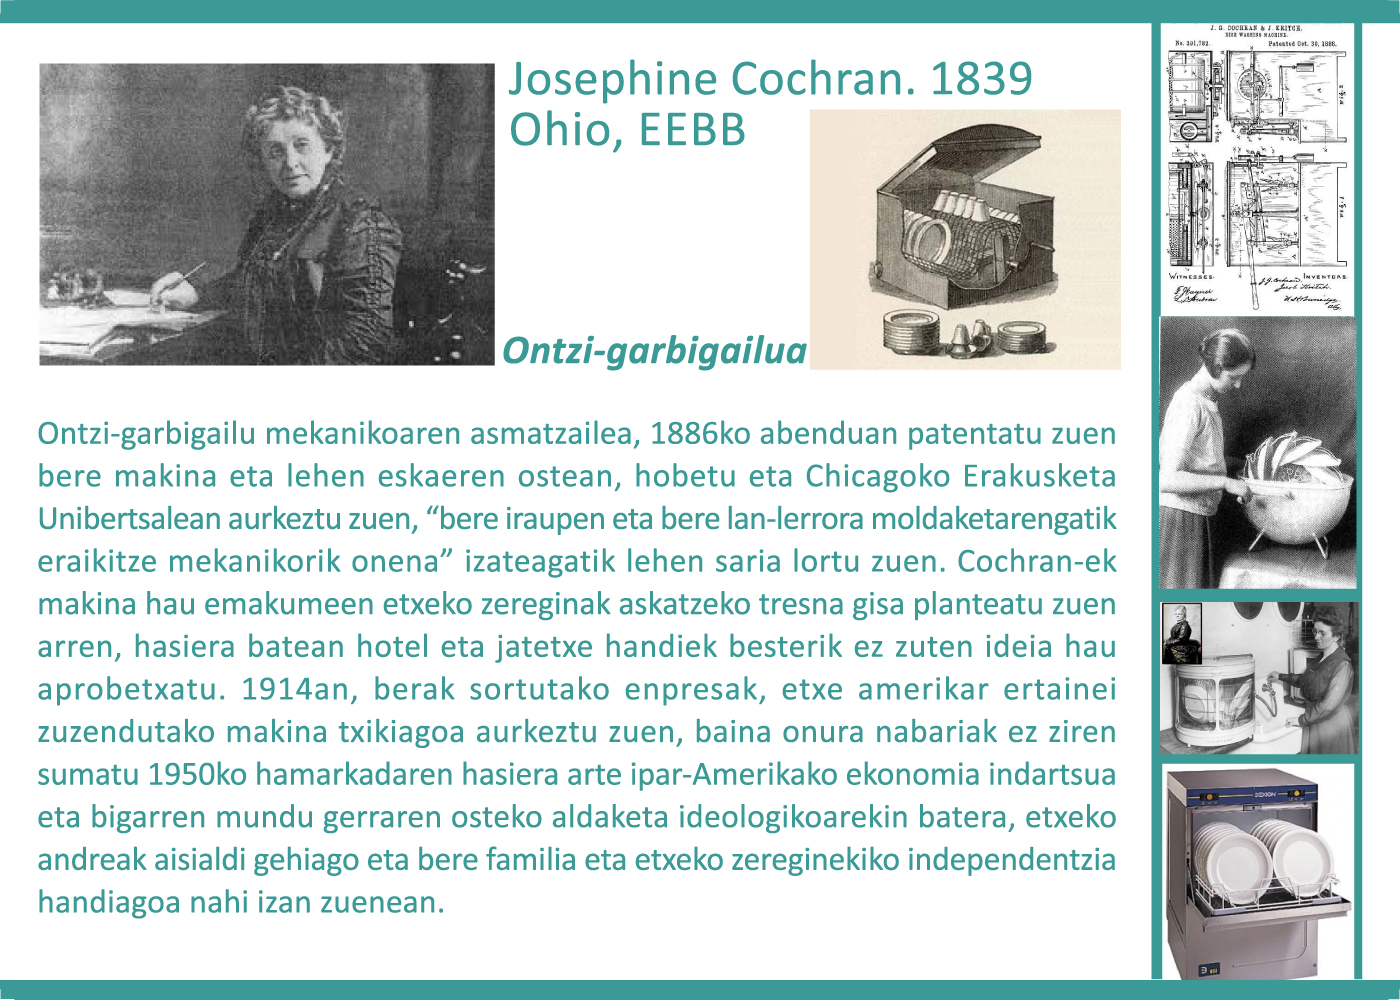 Josephine Cochran, 1839. Ontzi-garbigailua